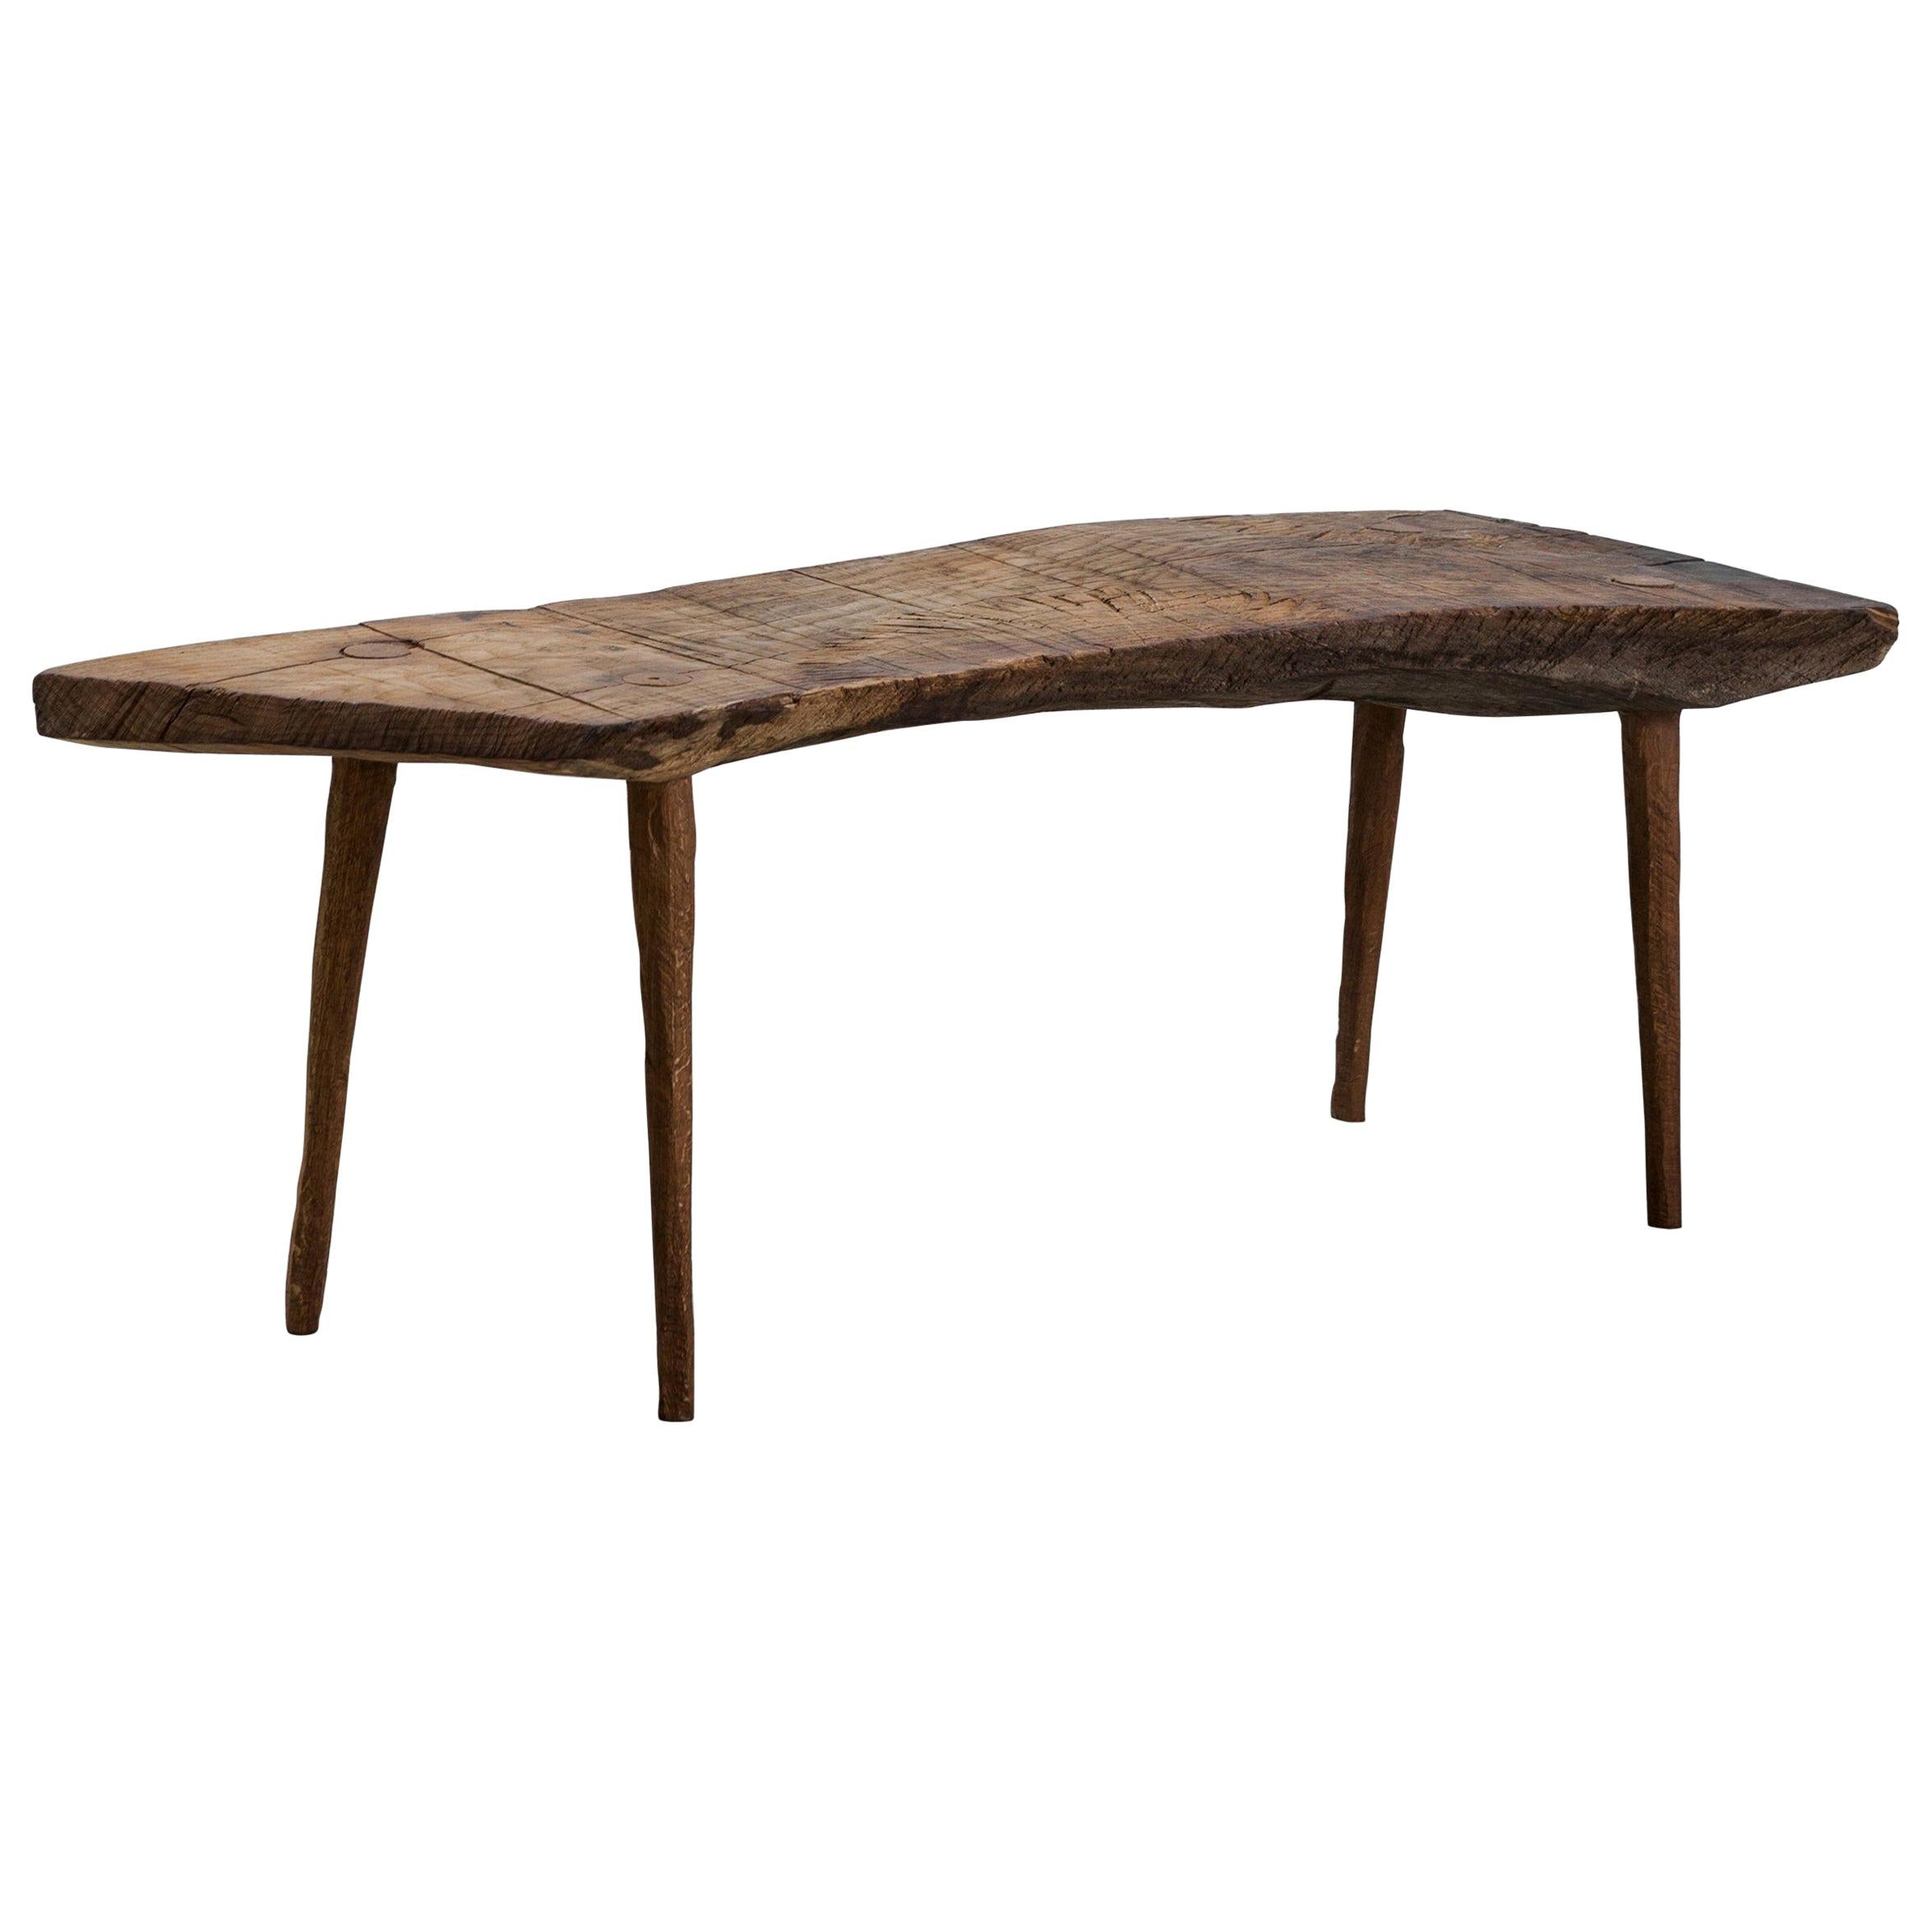 Petite table n°5 contemporaine de style brutaliste en chêne massif et huile de lin en vente